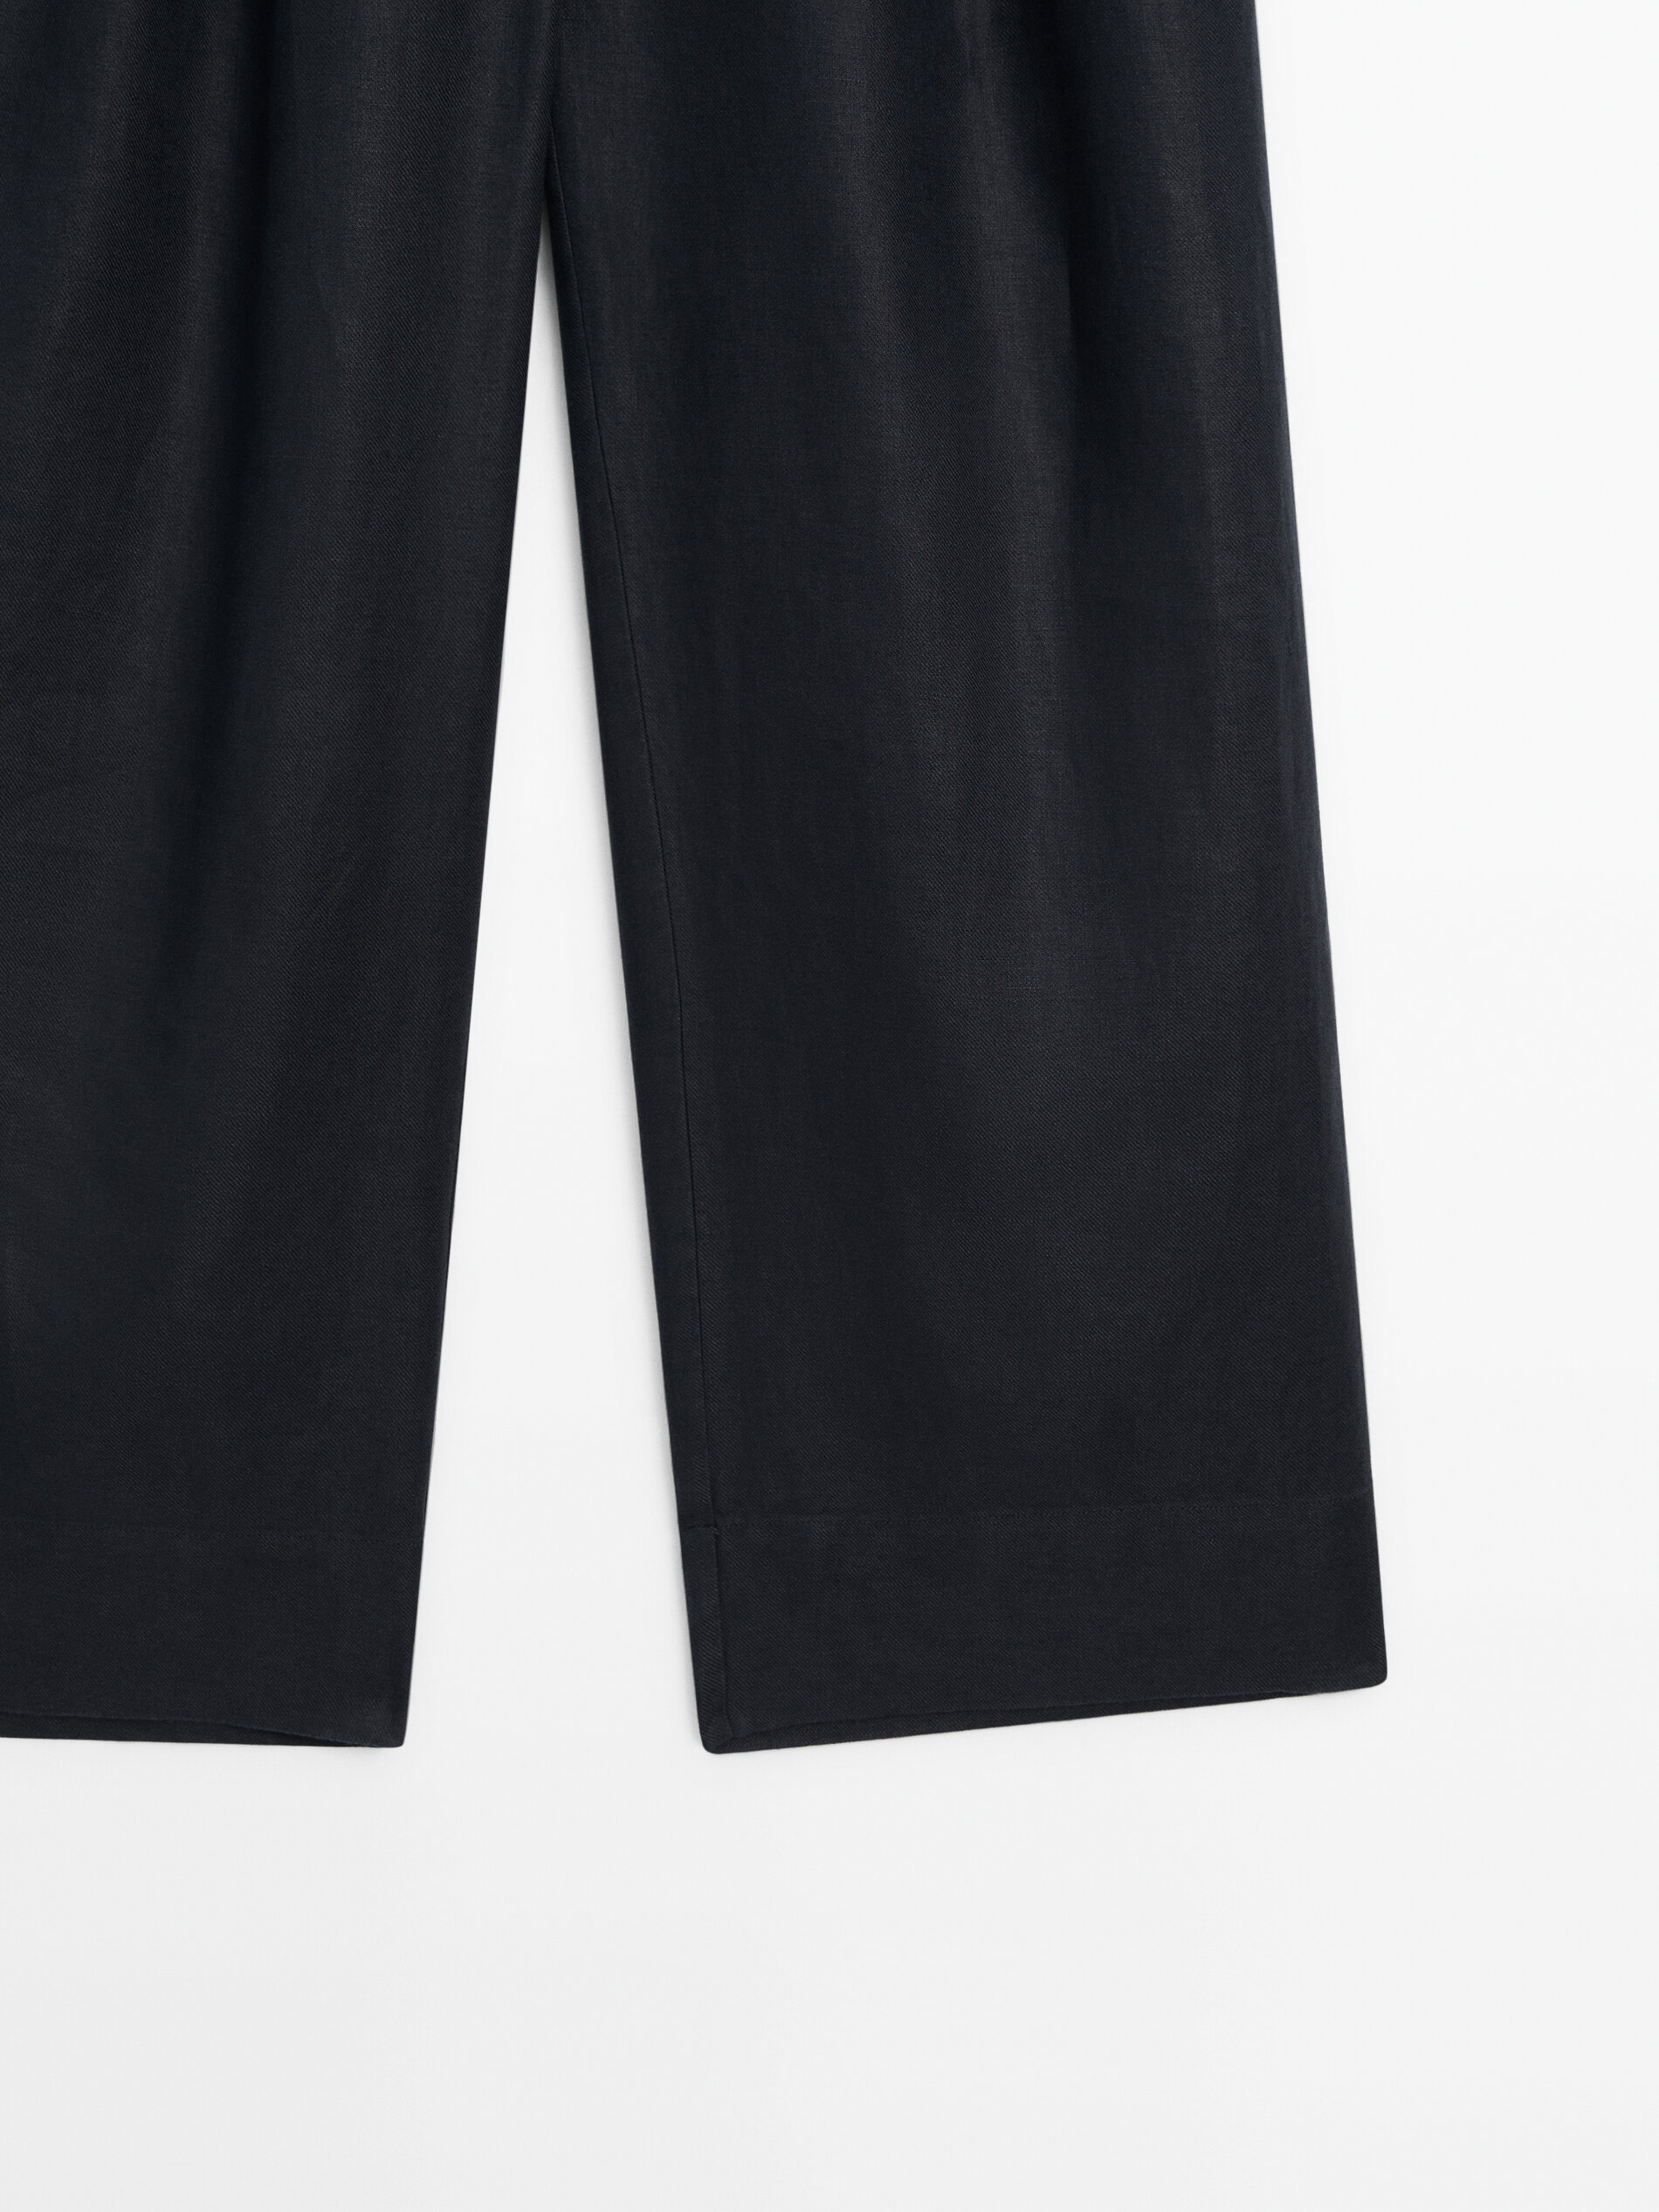 Pantalón doble pinza 100% lino